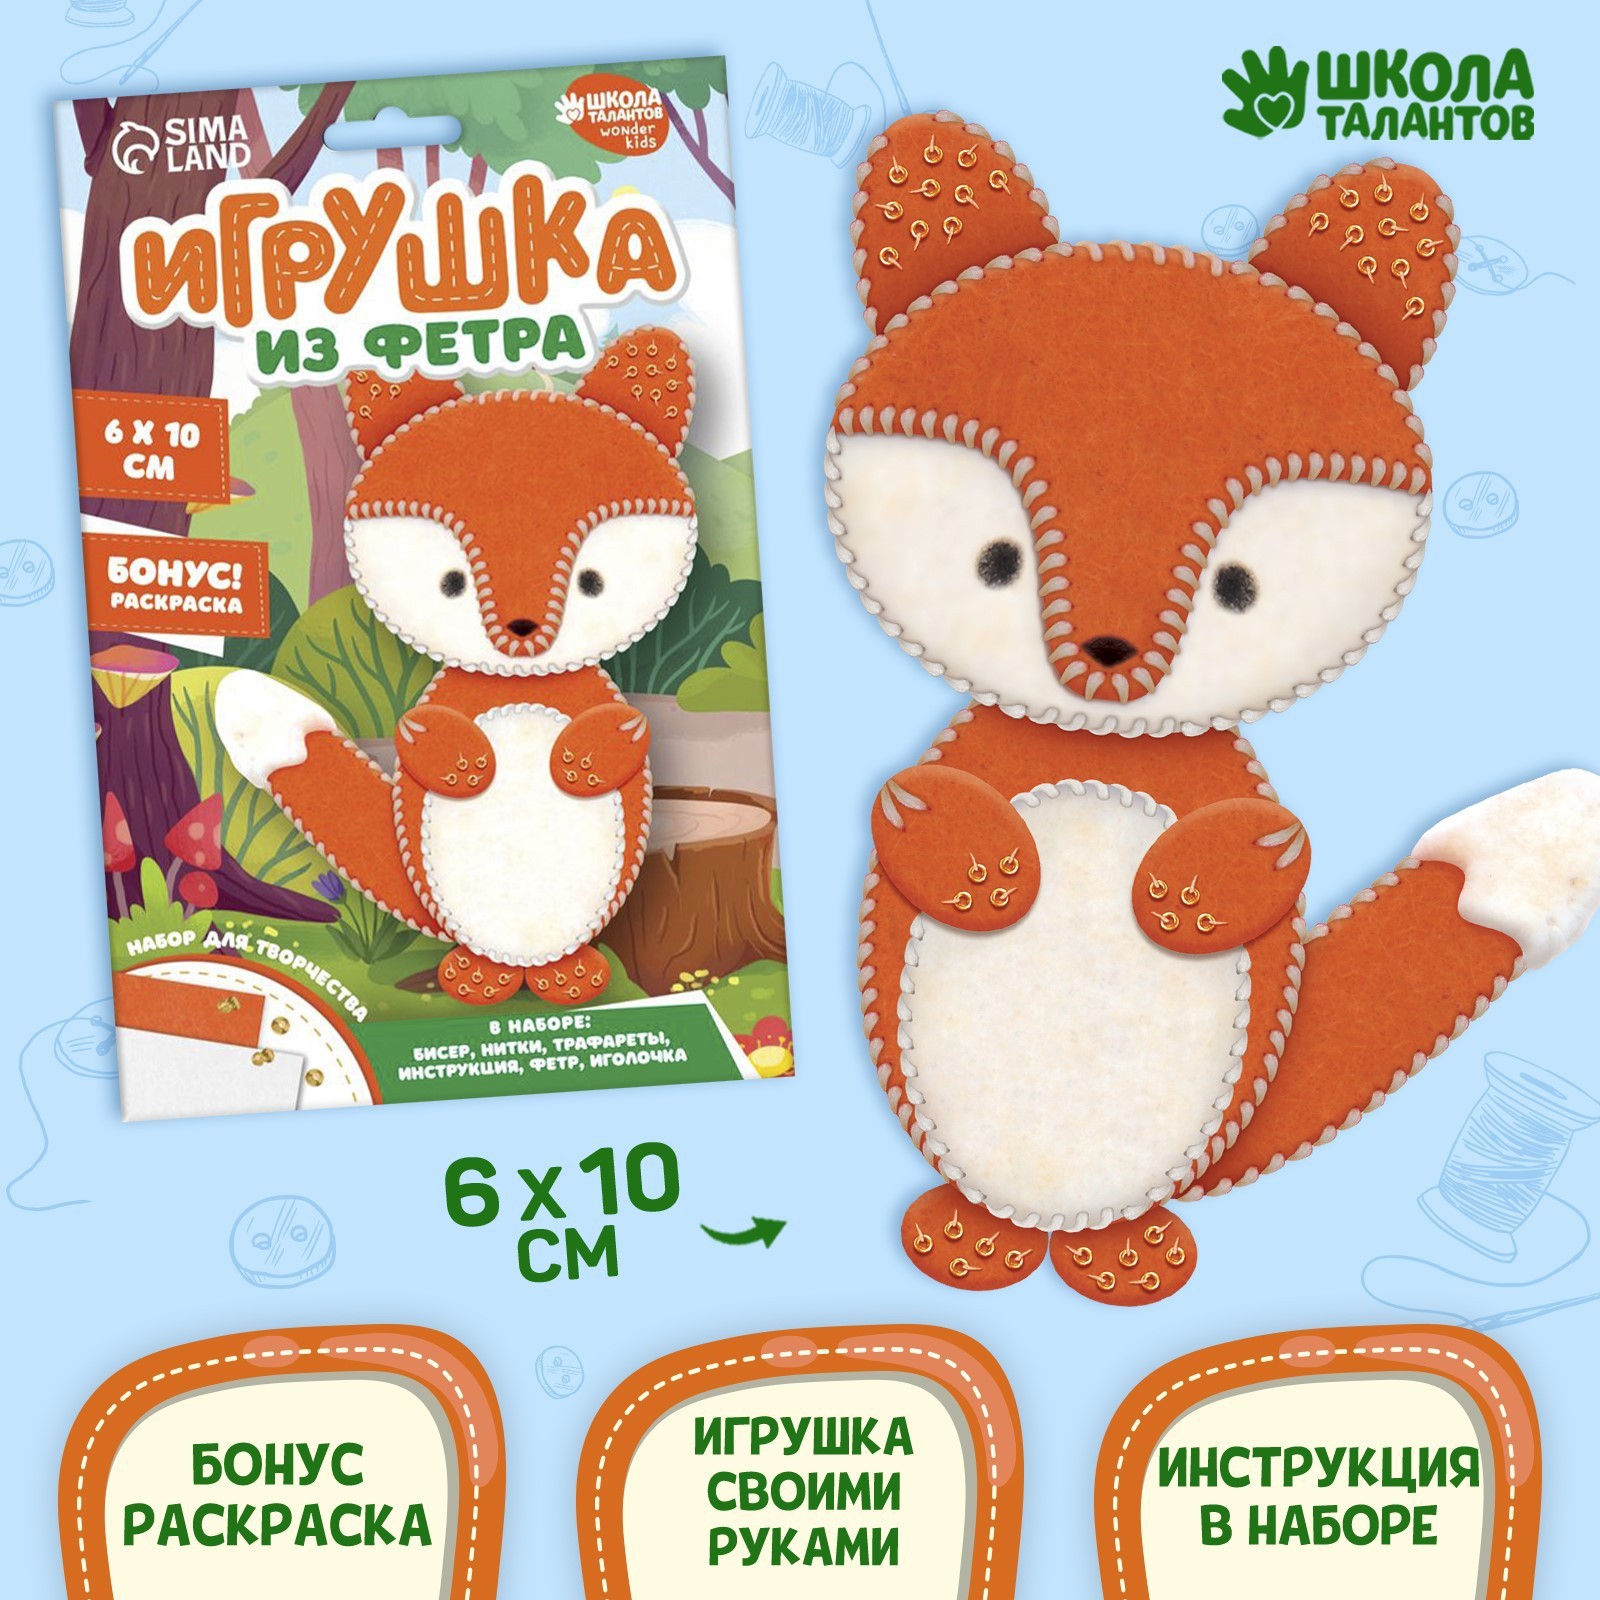 Купить детские игрушки в Киеве Недорого в Интернет магазине игрушек Украины - hb-crm.ru